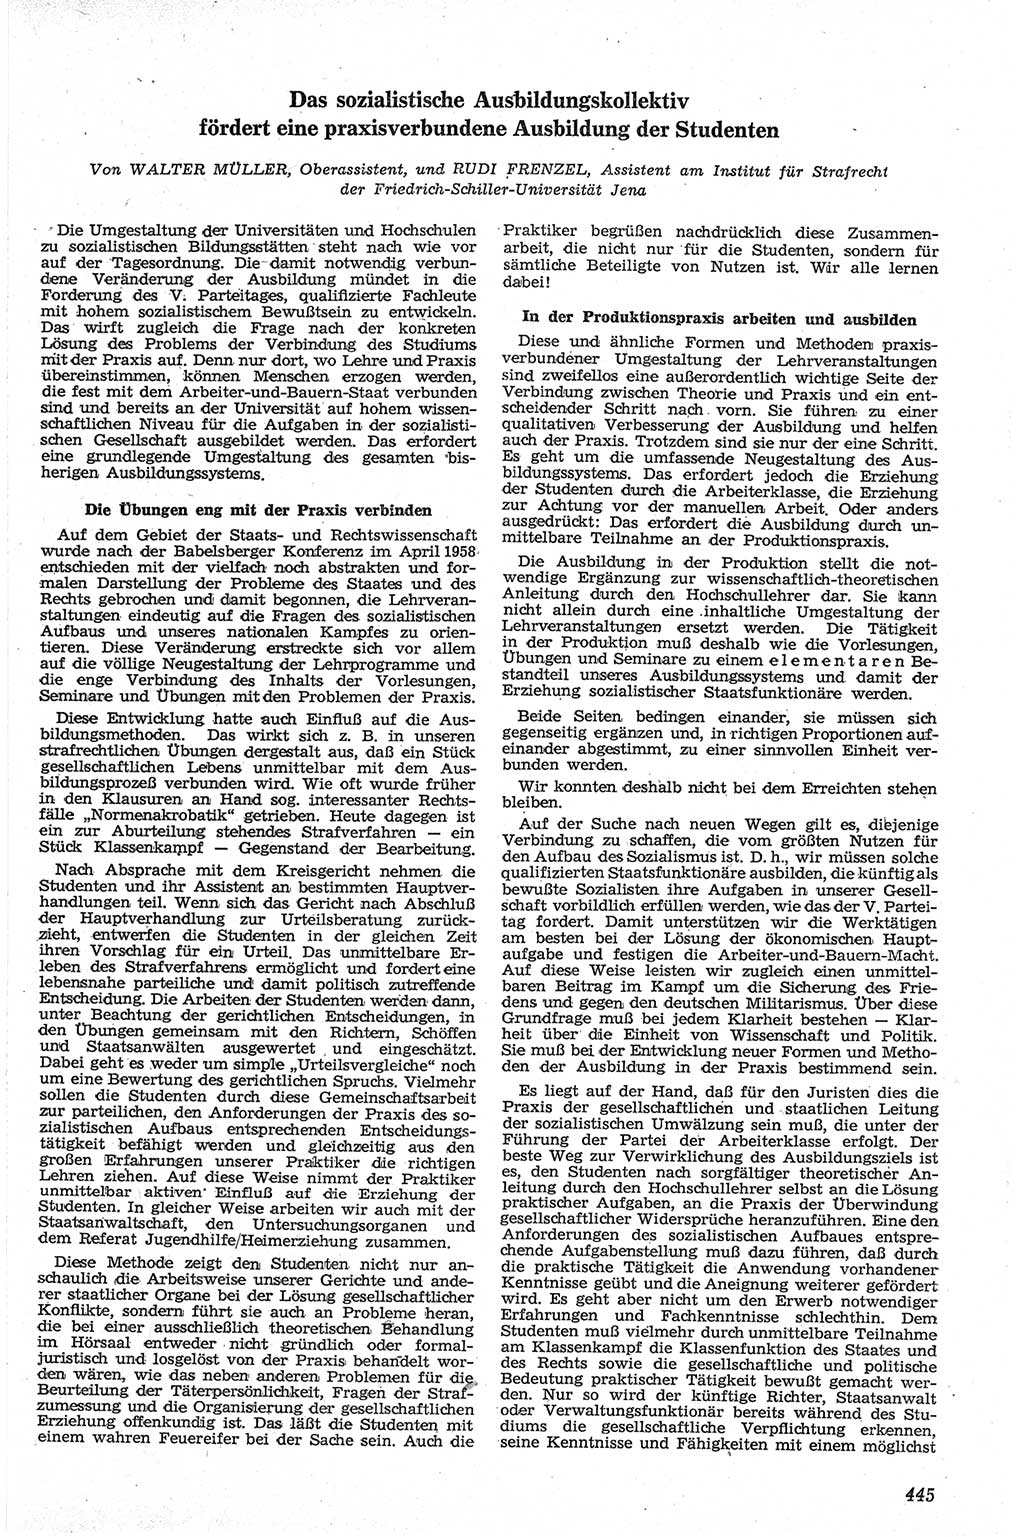 Neue Justiz (NJ), Zeitschrift für Recht und Rechtswissenschaft [Deutsche Demokratische Republik (DDR)], 13. Jahrgang 1959, Seite 445 (NJ DDR 1959, S. 445)